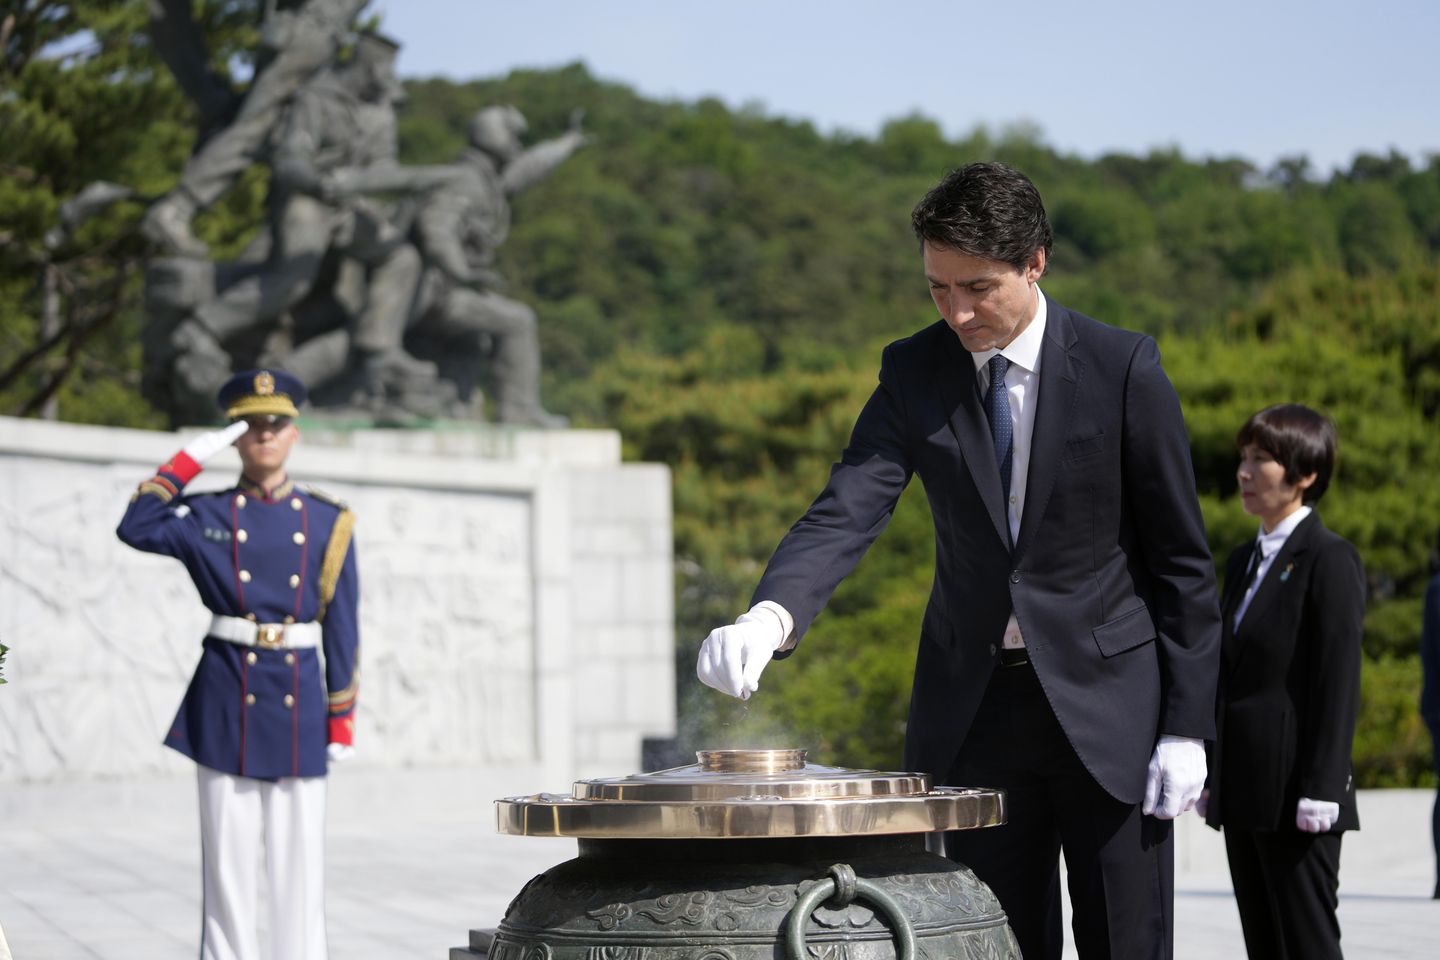 Güney Koreli ve Kanadalı liderler temiz enerji ve Kuzey Kore tehdidi konusunda işbirliği sözü verdi